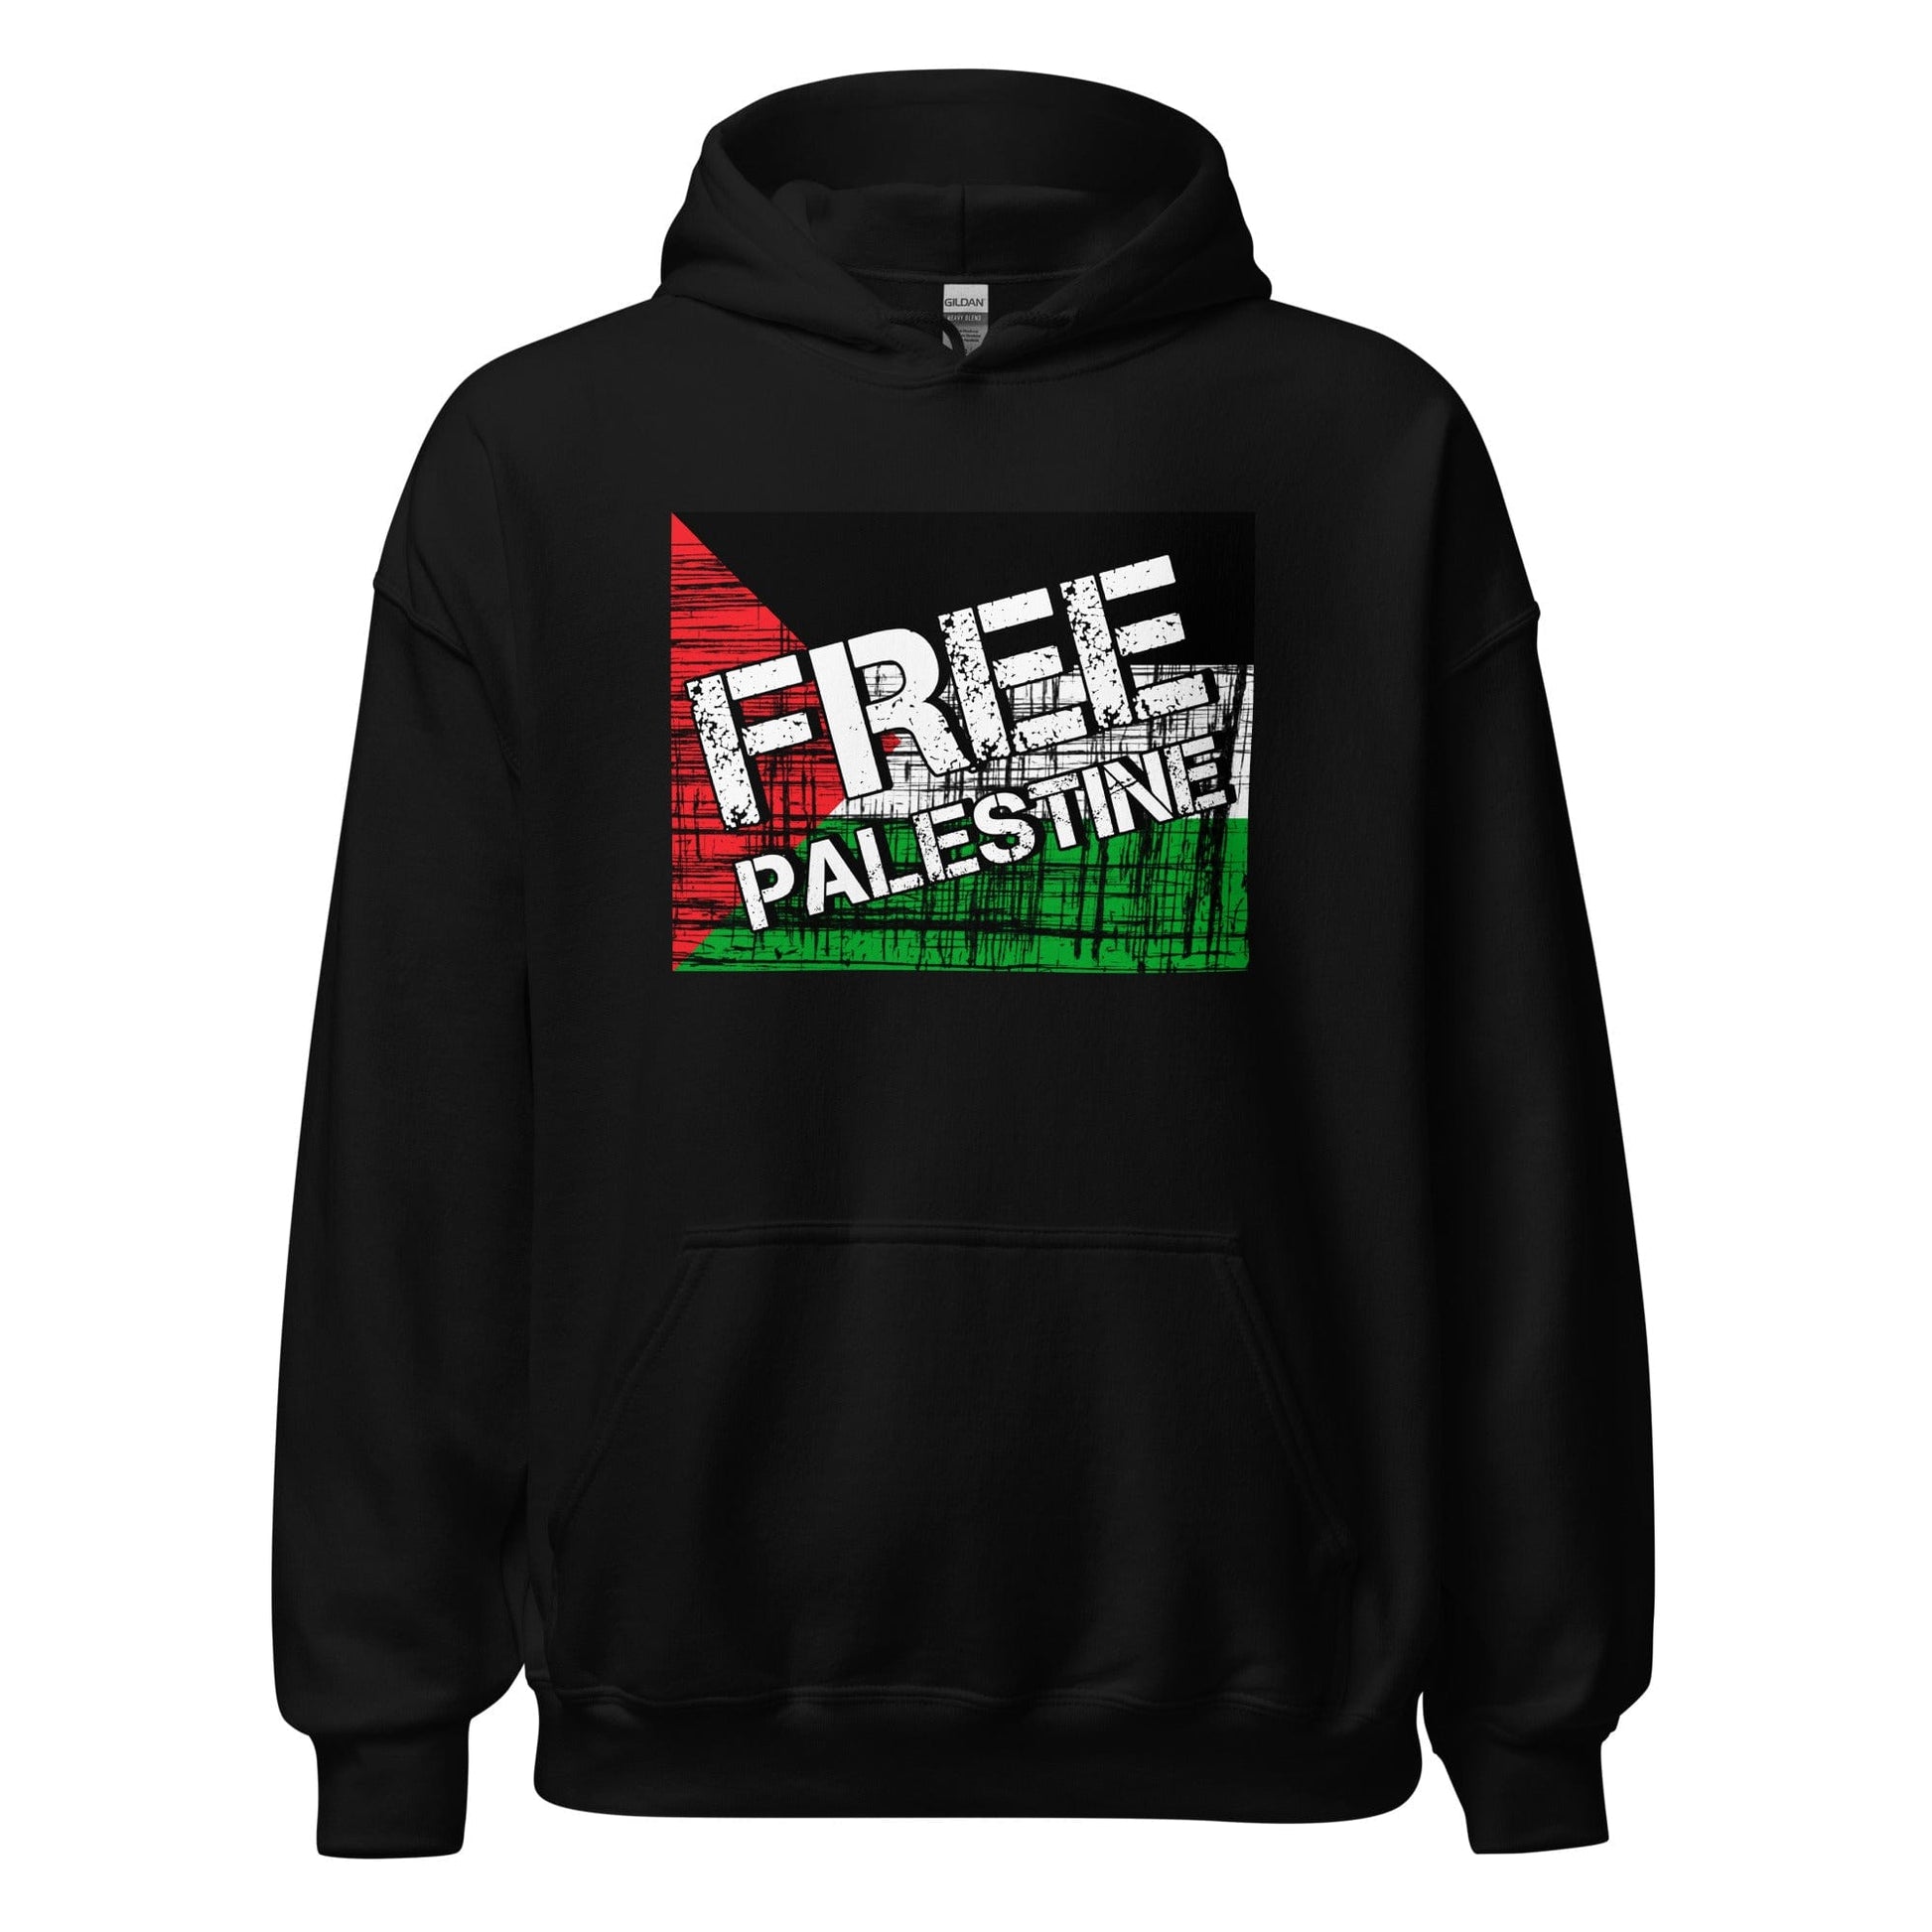 Free Palestine Unisex Hoodie Black / S